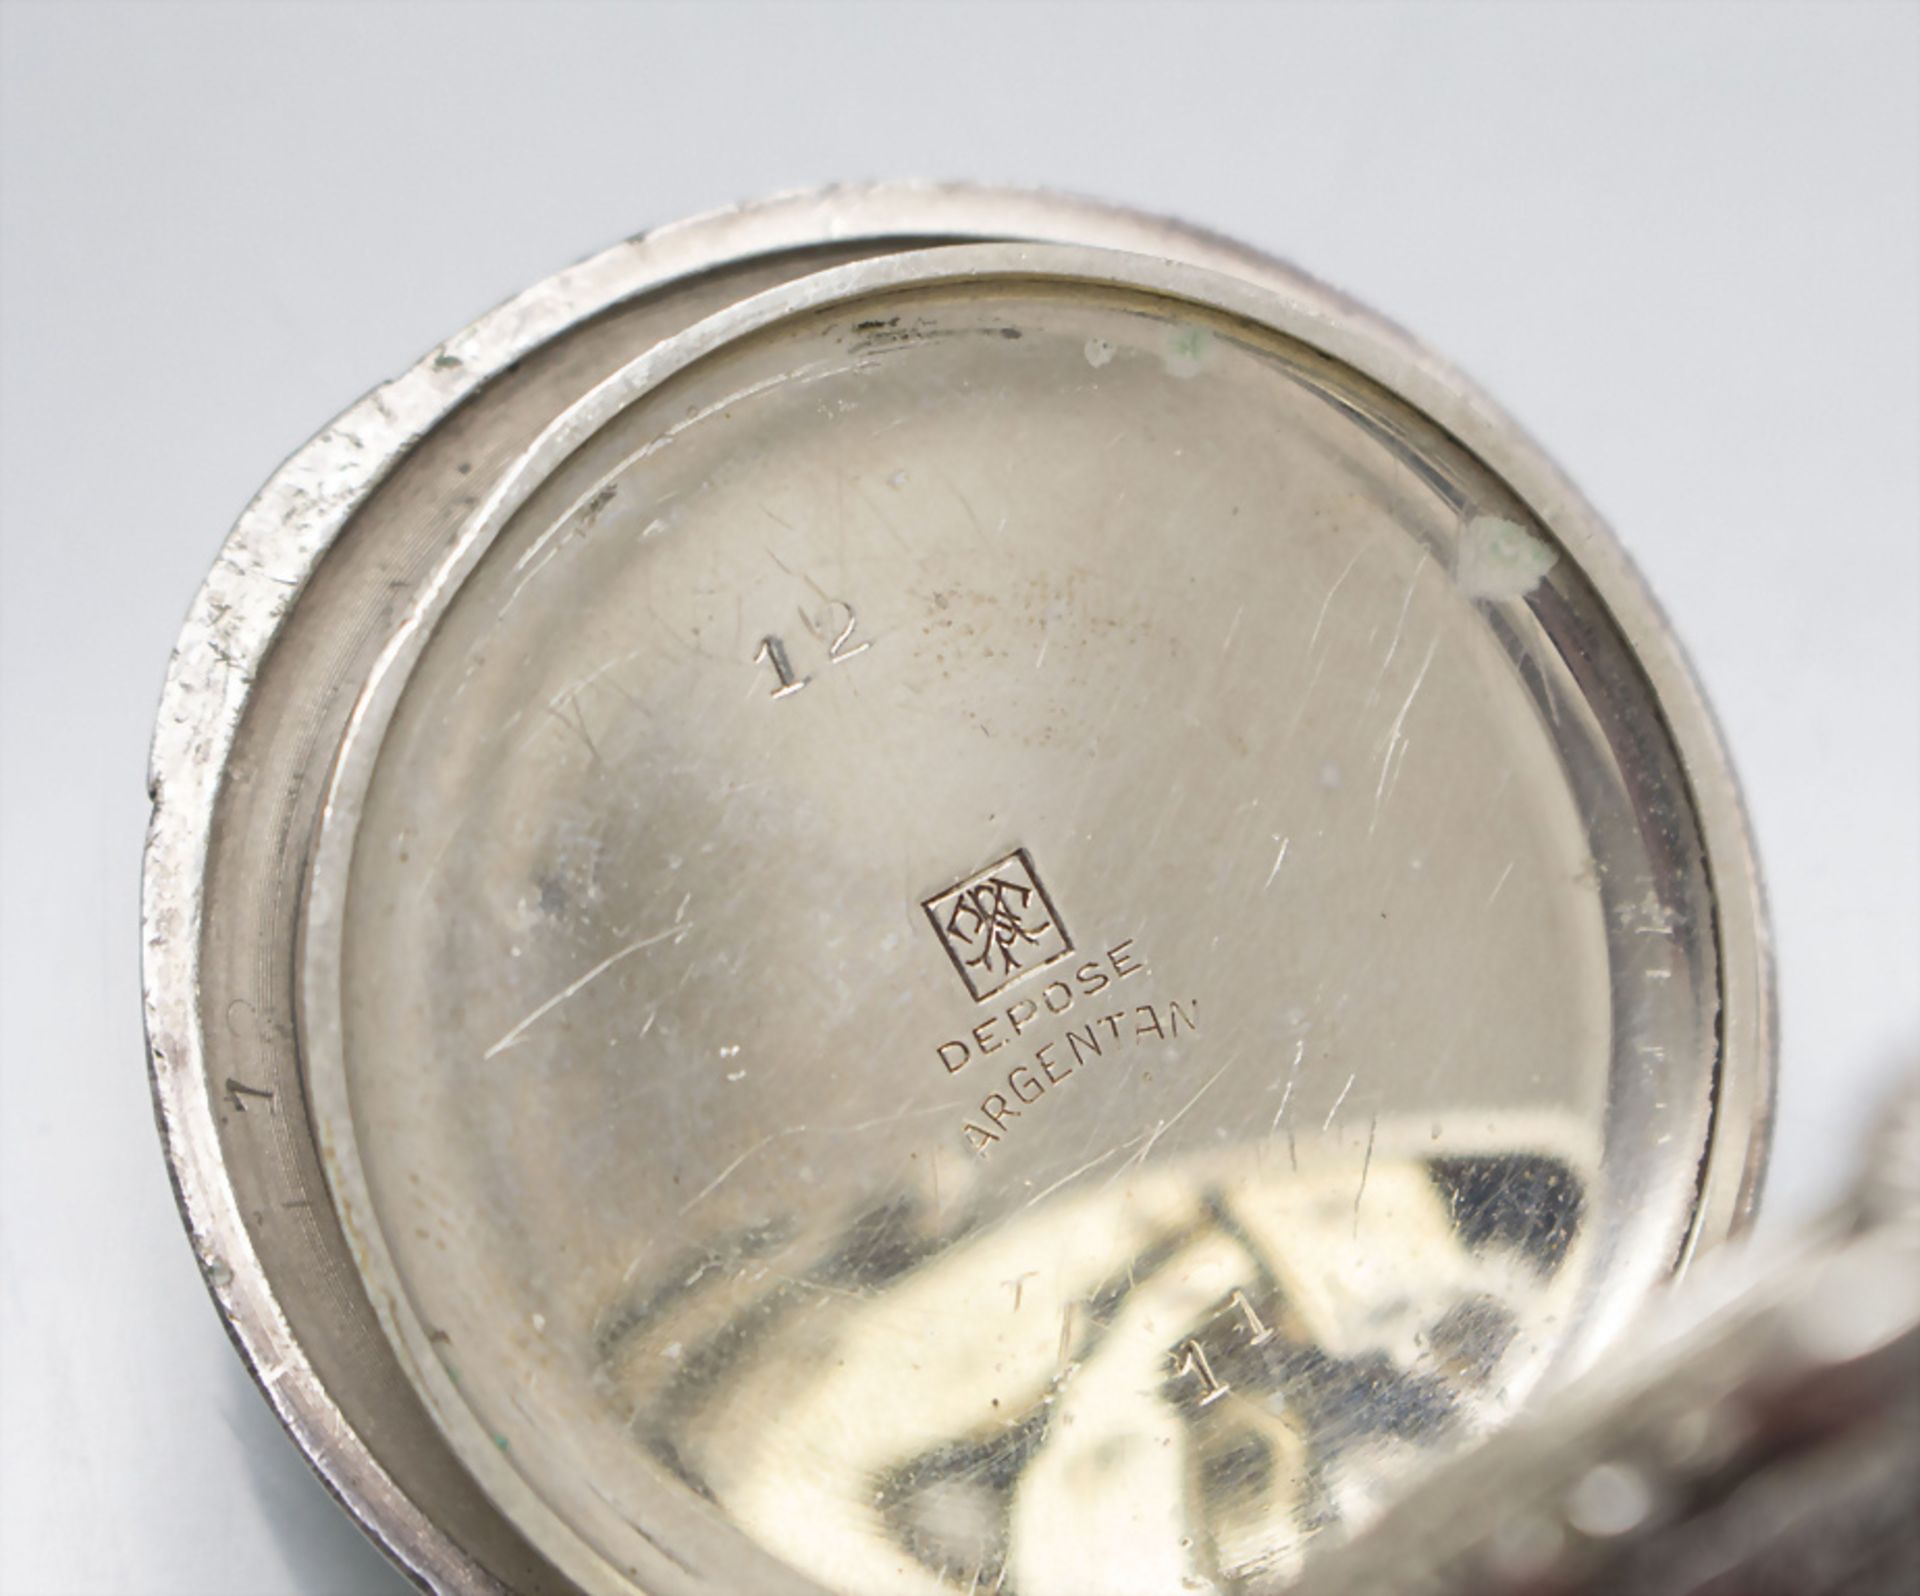 Offene Taschenuhr / A pocket watch, Vacheron Constantin, Schweiz/Swiss, um 1920 - Image 6 of 6